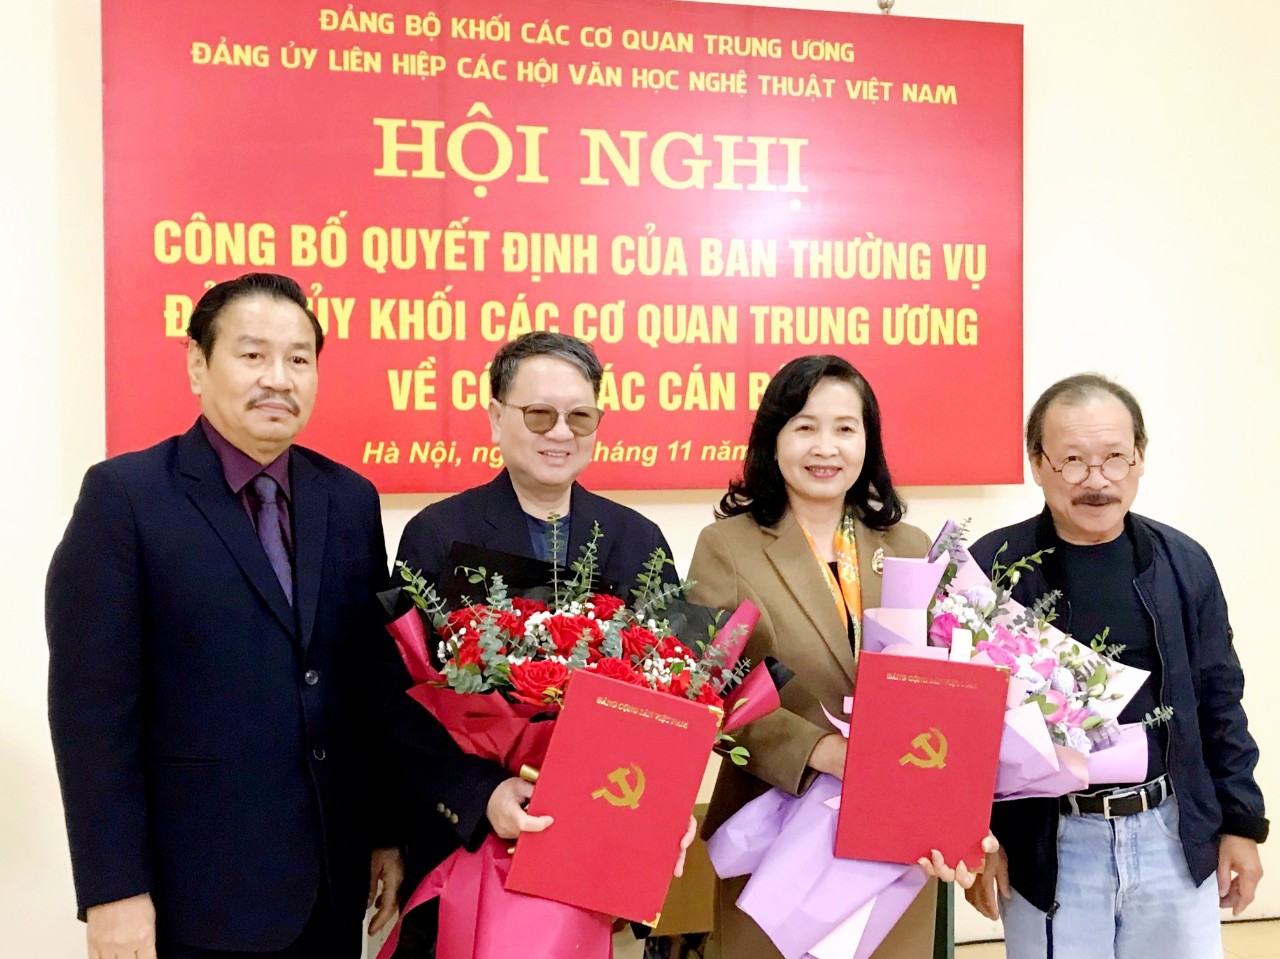 Đảng ủy Liên hiệp các Hội Văn học nghệ thuật Việt Nam công bố Quyết định về công tác cán bộ - 2